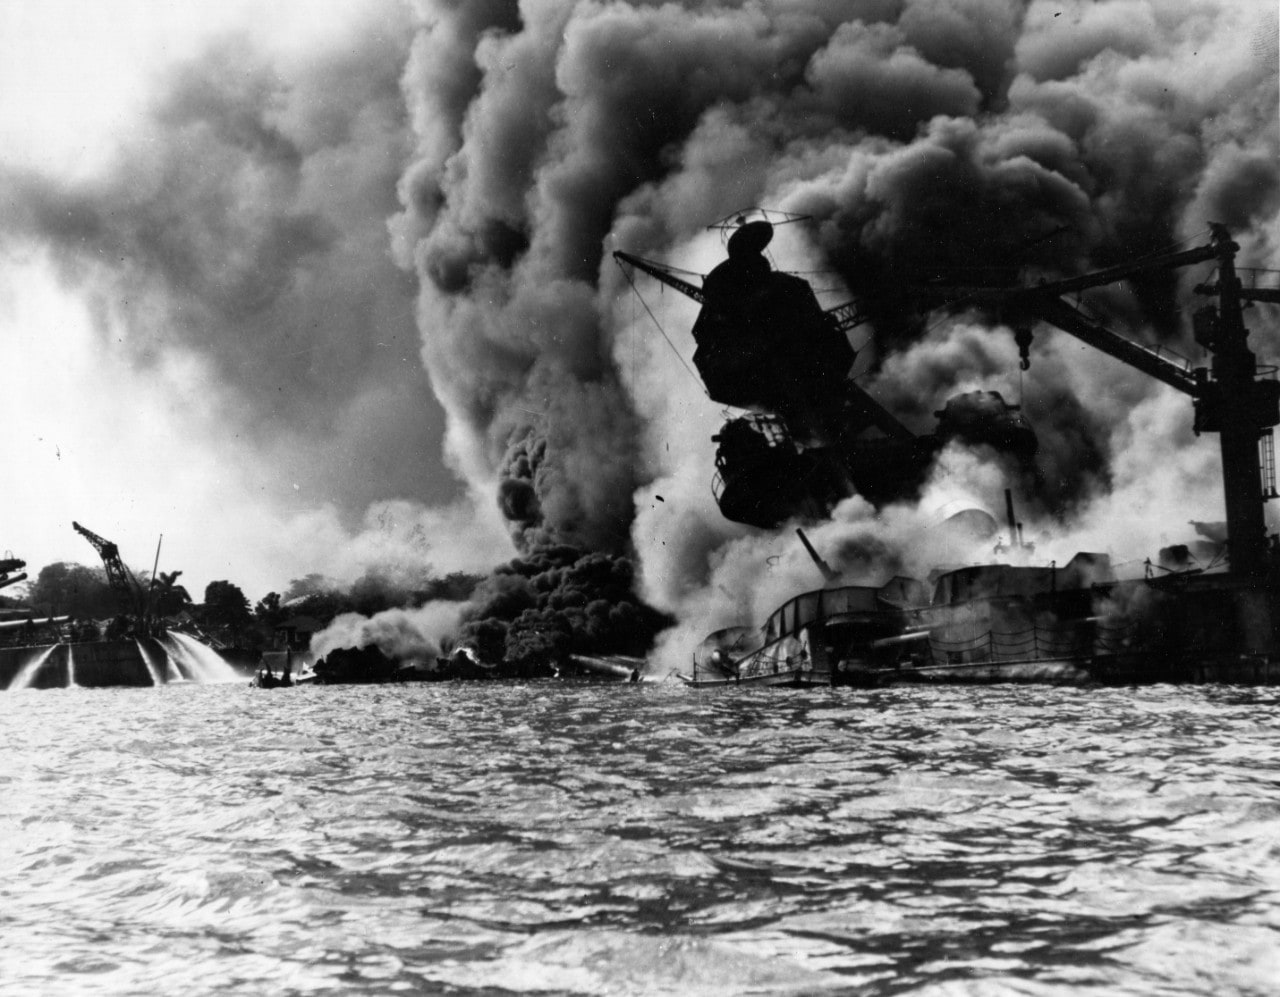 USS Arizona burning